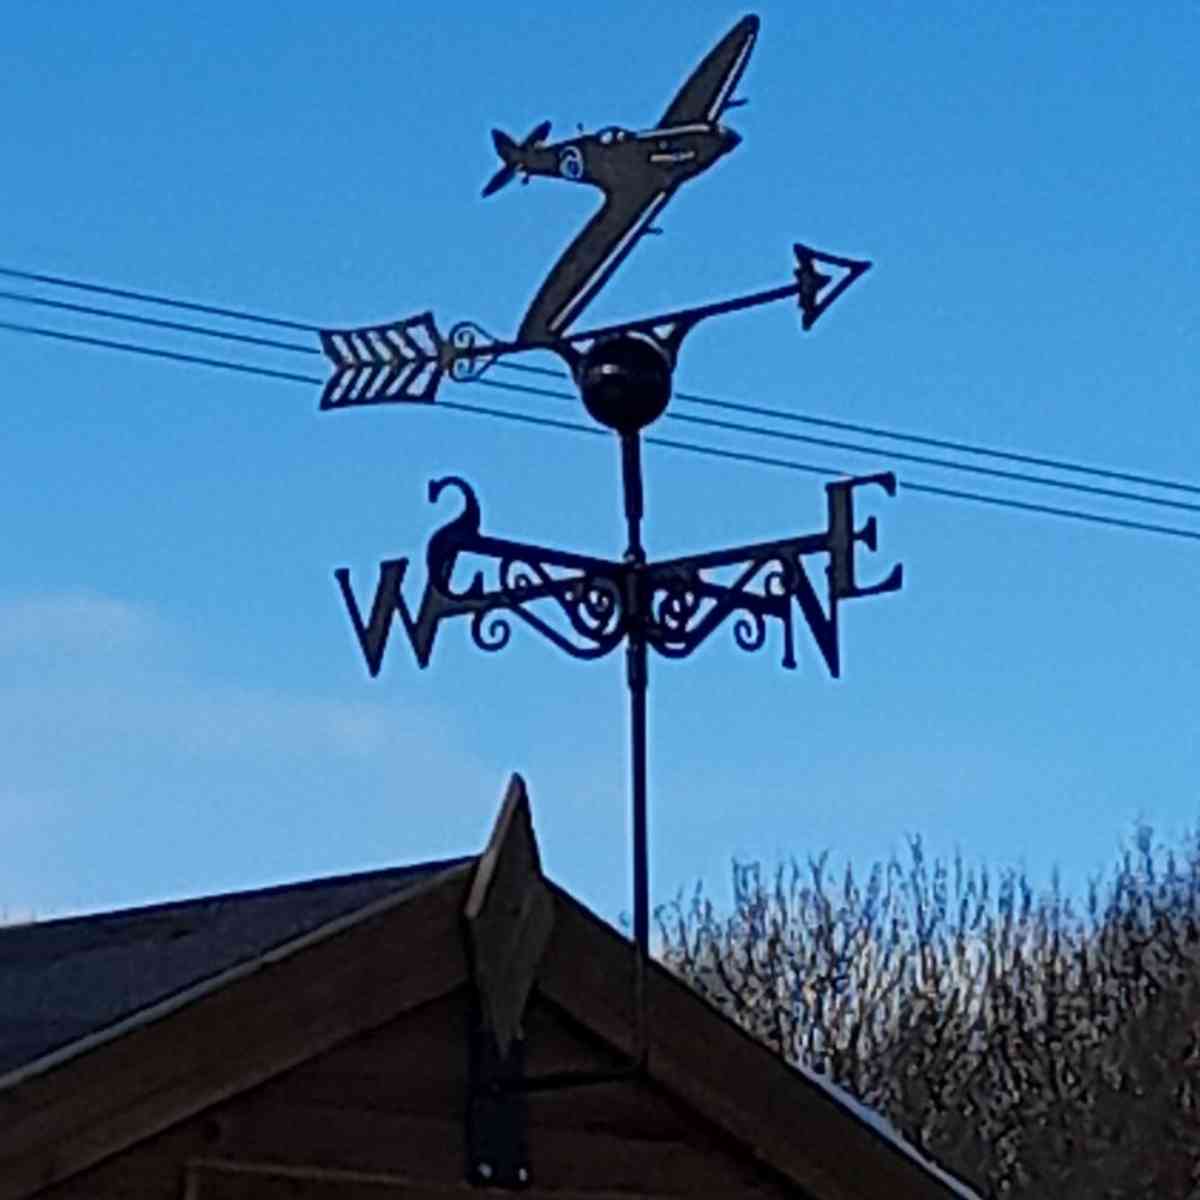 spitfire weathervane installed